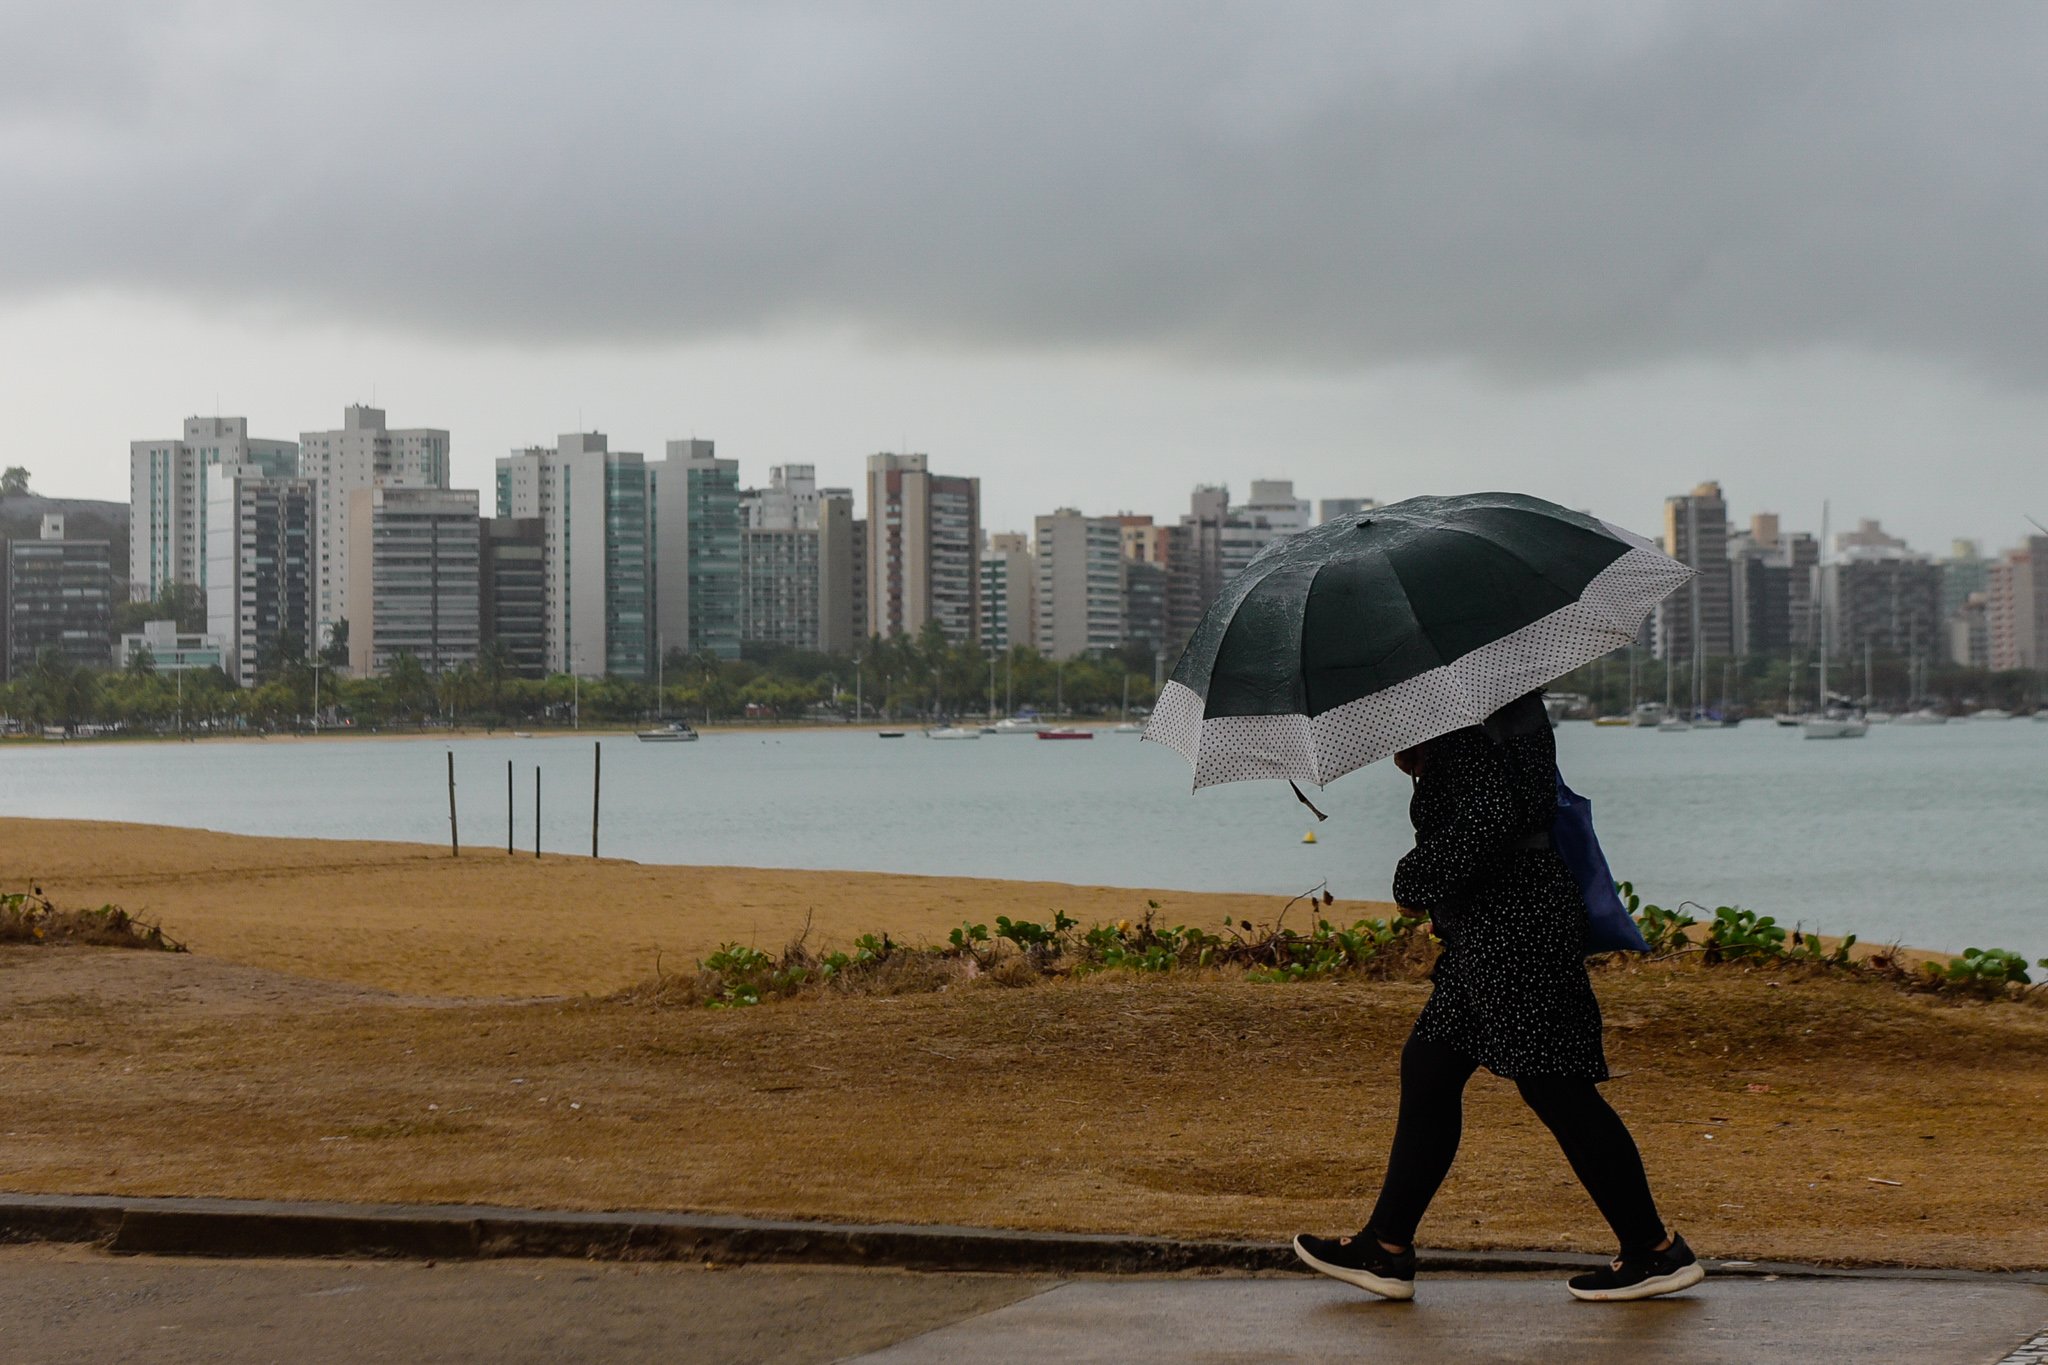 Climatempo, empresa de meteorologia, explica que as temperaturas mais baixas decorrem de uma massa de ar frio que entrou no Brasil pela região Sul